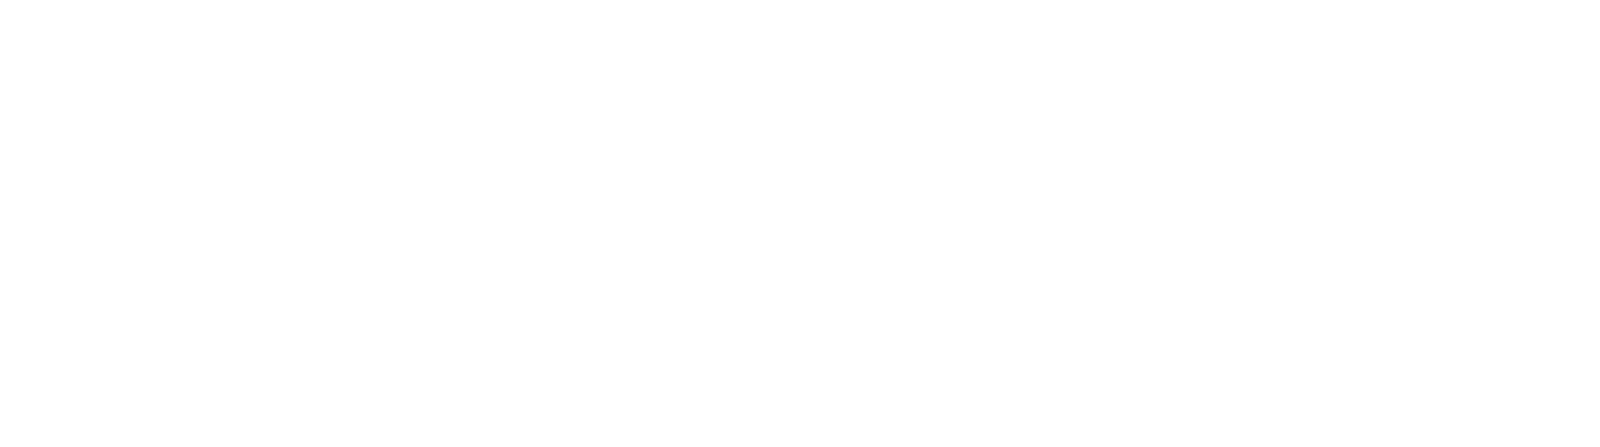 Gogoro Logo groß für dunkle Hintergründe (transparentes PNG)